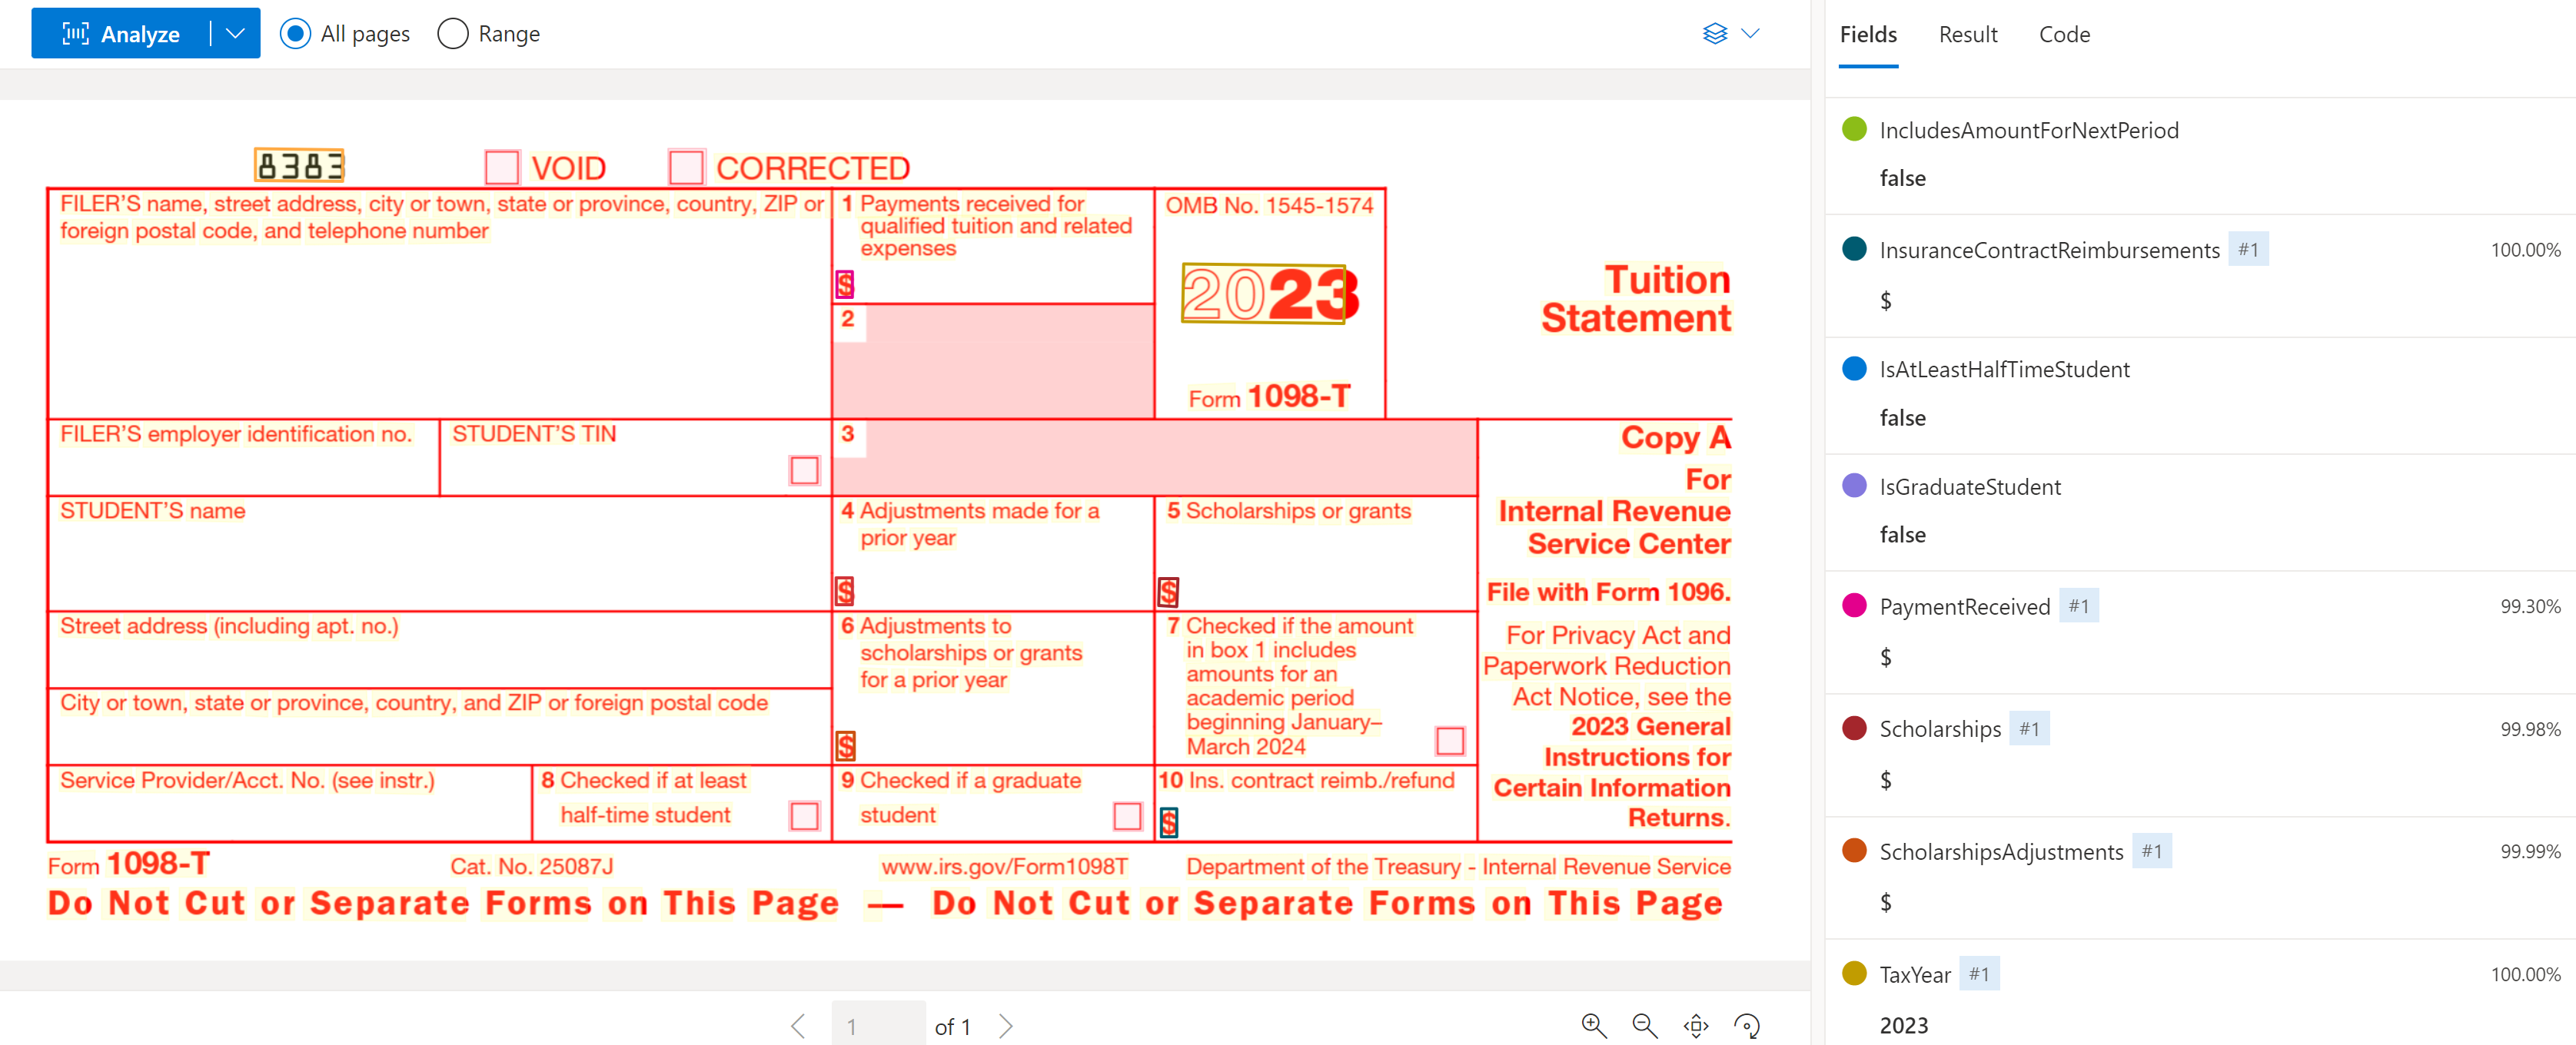 Capture d’écran du formulaire fiscal américain 1098-T analysé dans Studio Intelligence Documentaire.